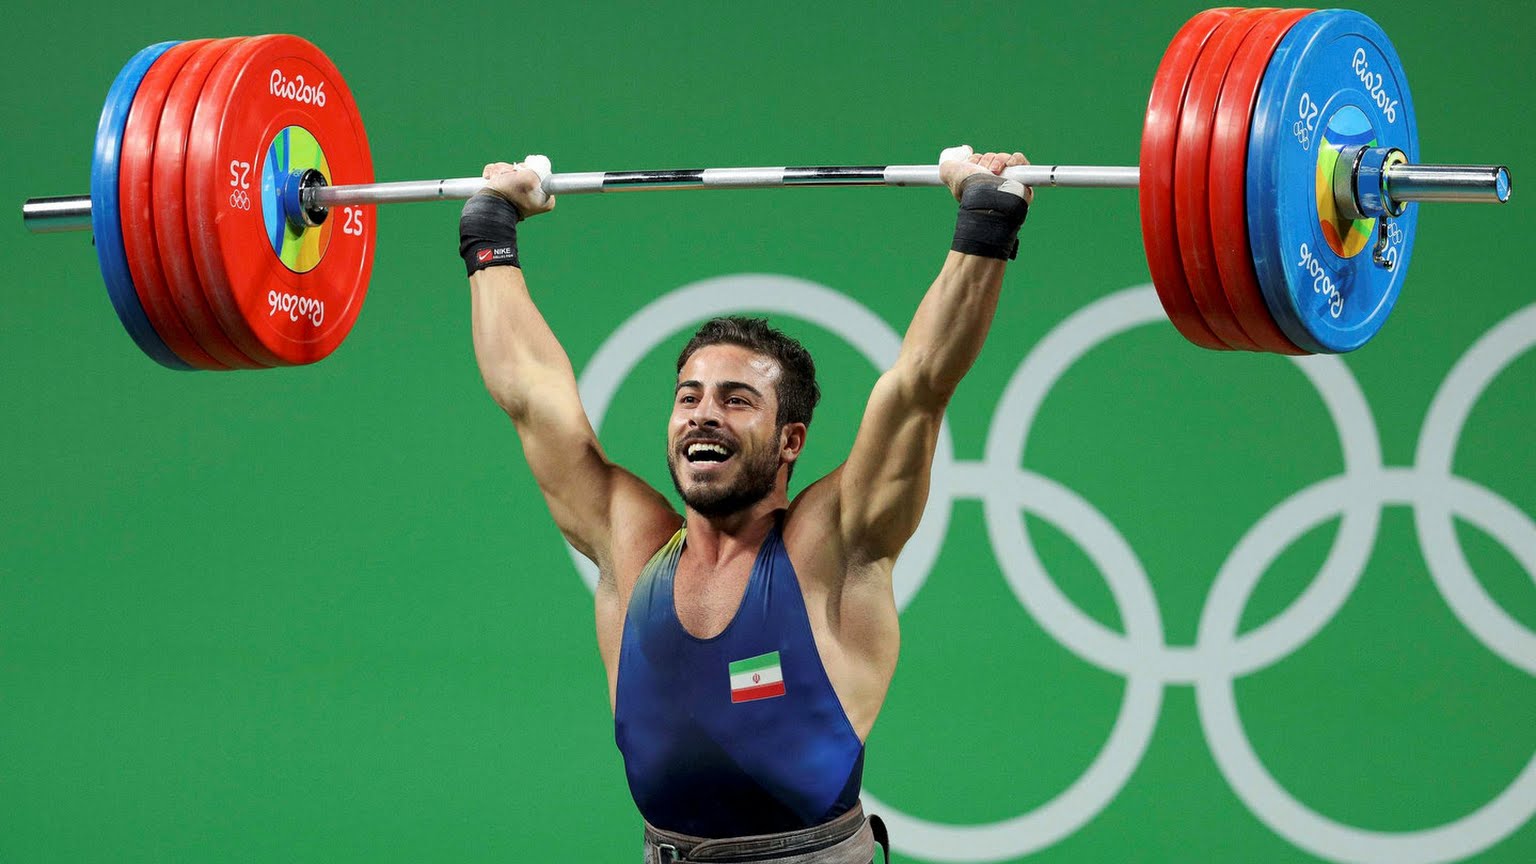 اولین طلای کاروان ایران با رکوردشکنی رستمی/ لیفت زرین برای شکستن رکورد و طلسم